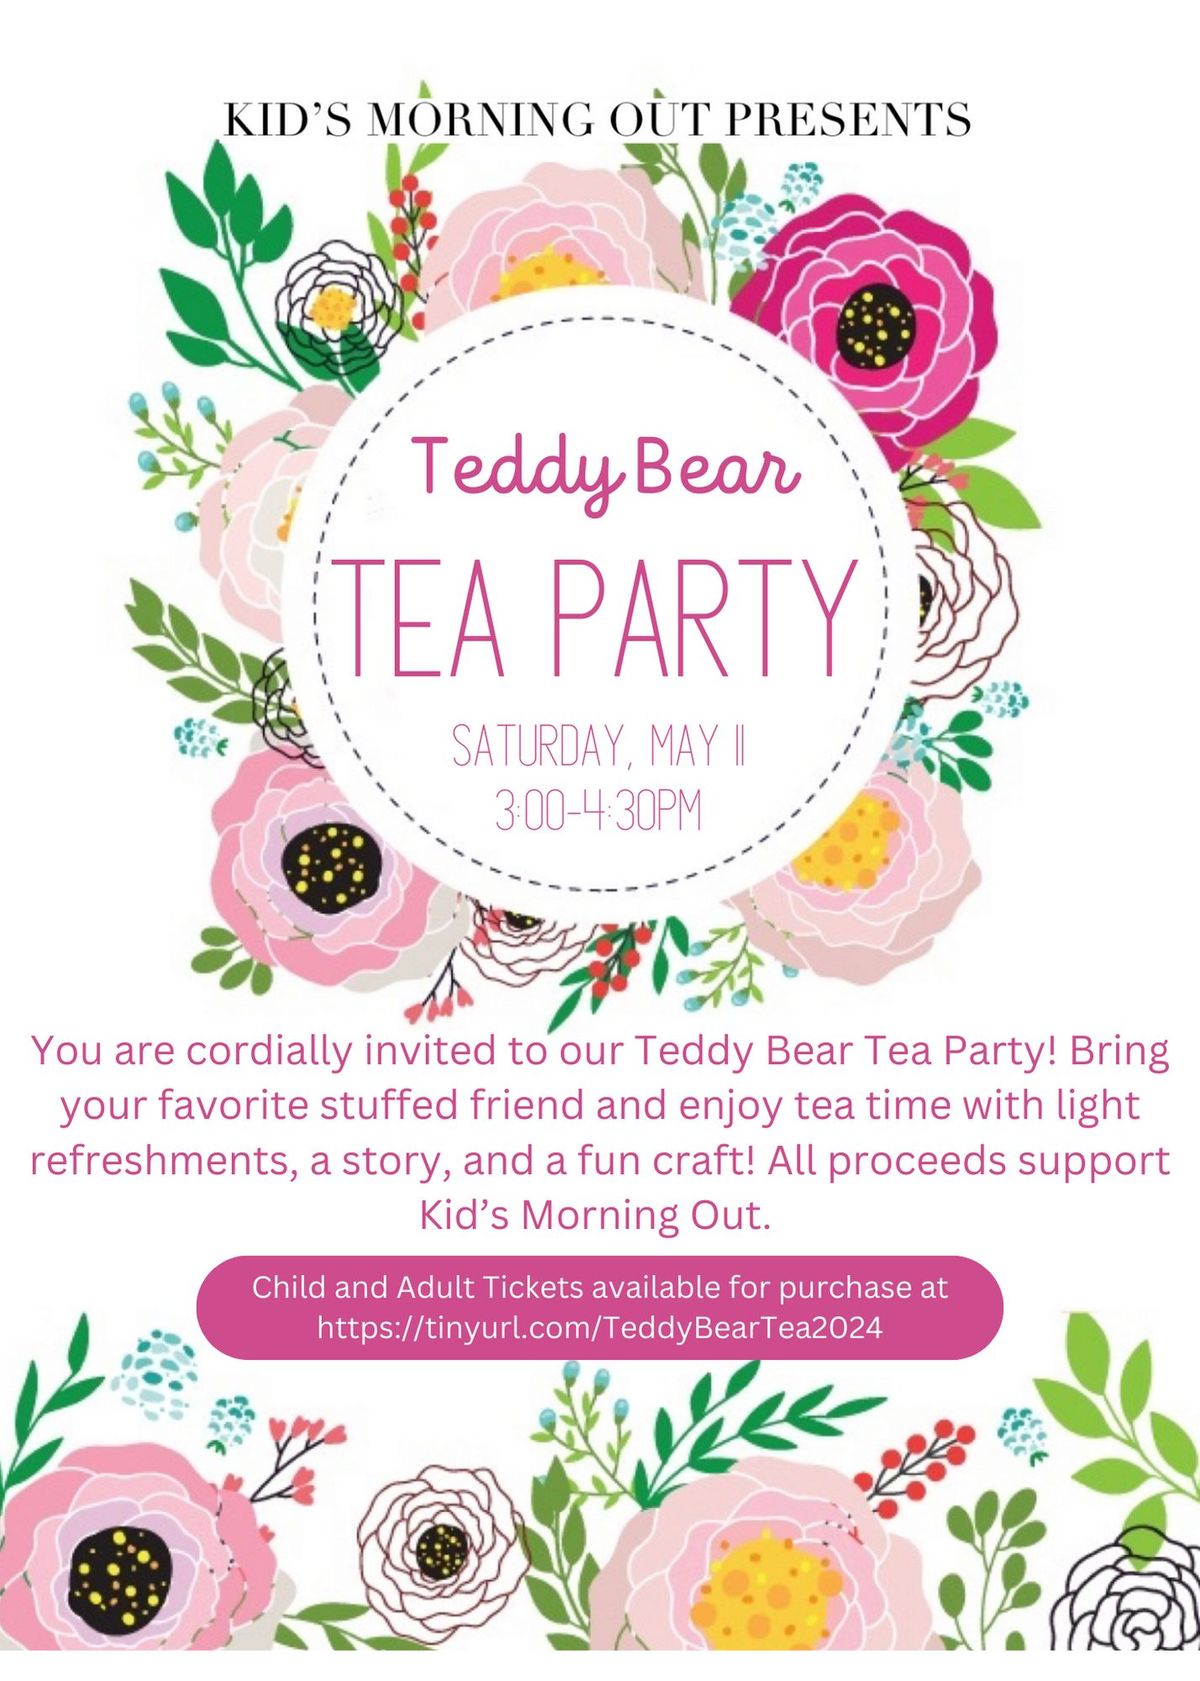 KMO's Teddy Bear Tea Party